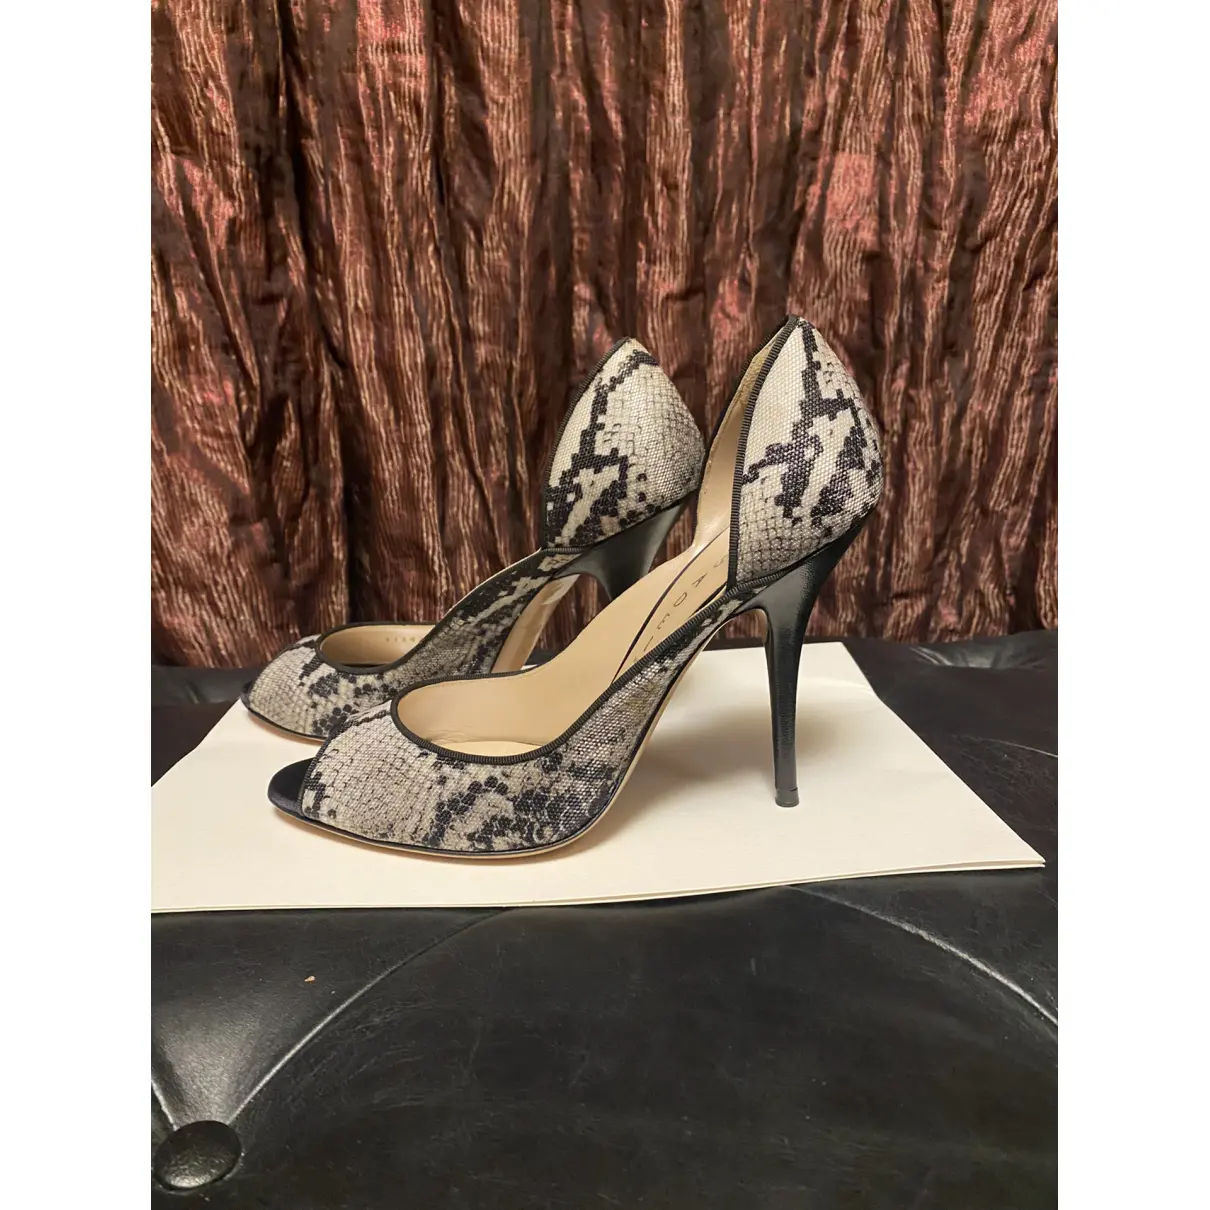 Buy Casadei Cloth heels online